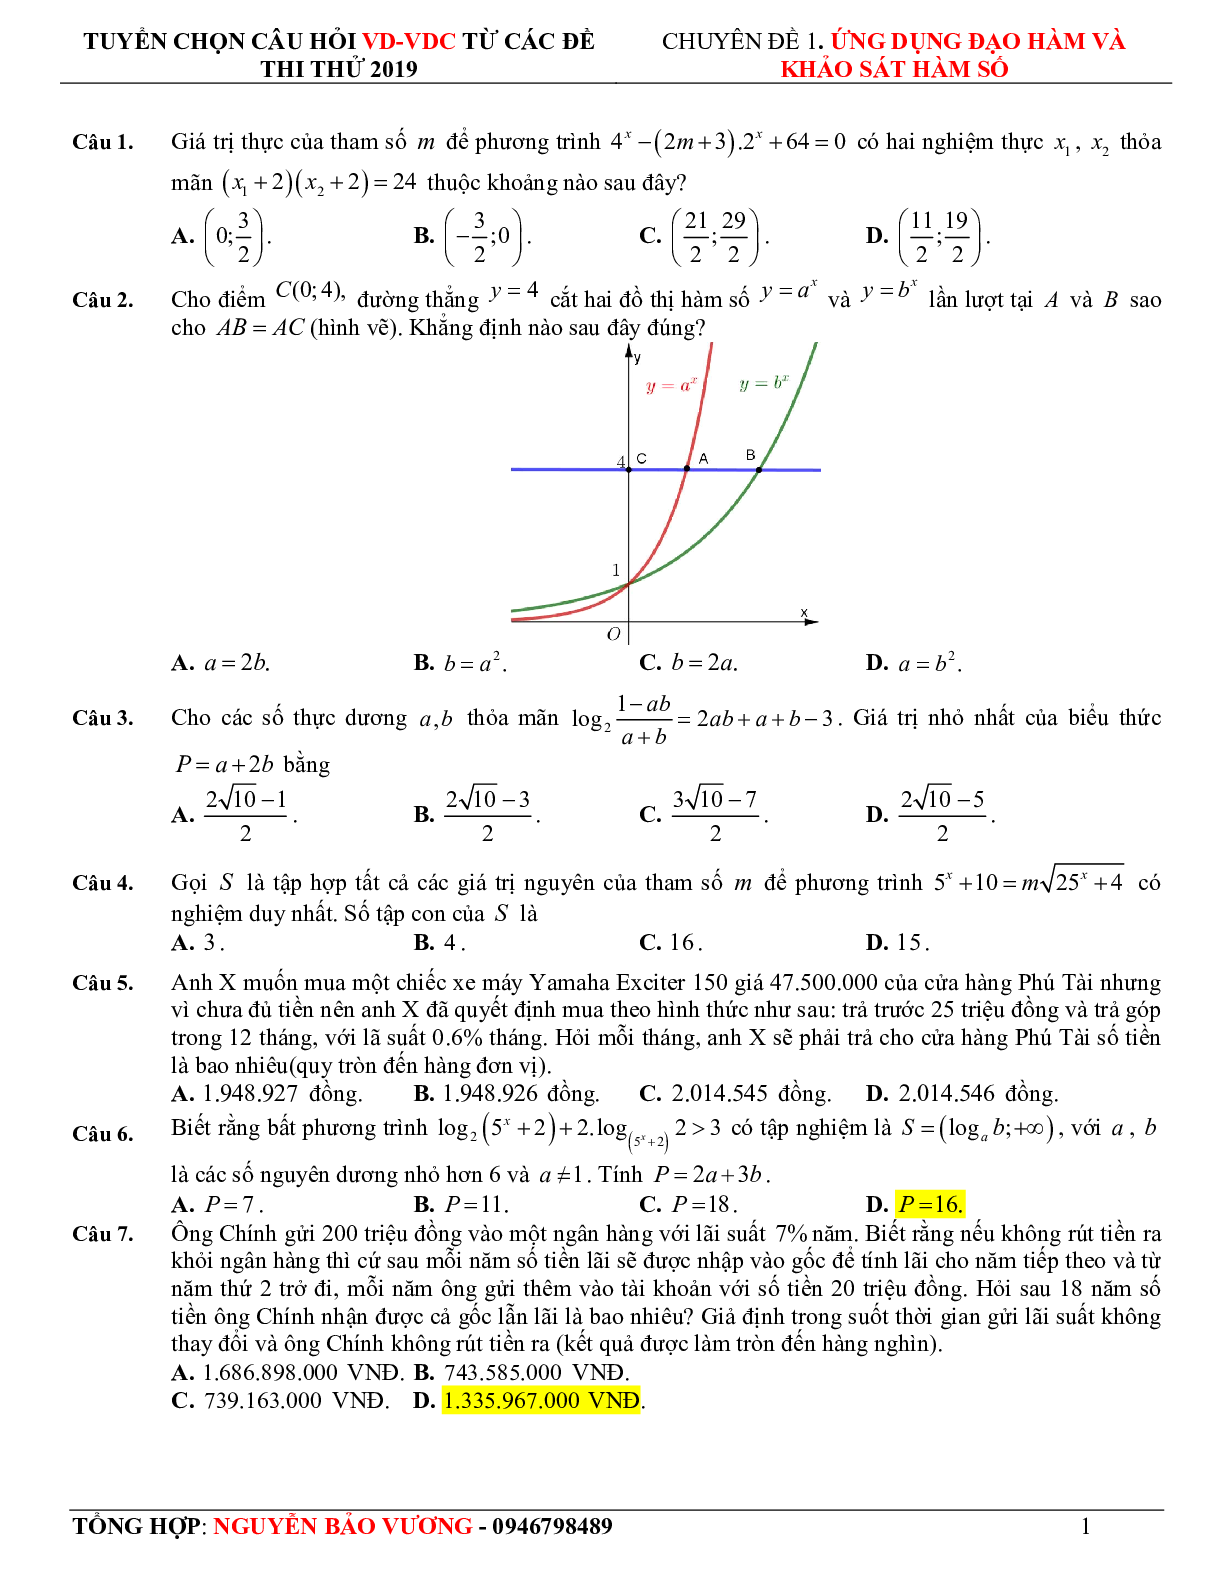 57 bài toán vận dụng - vận dụng cao hàm số mũ, logarit - có lời giải chi tiết (trang 2)